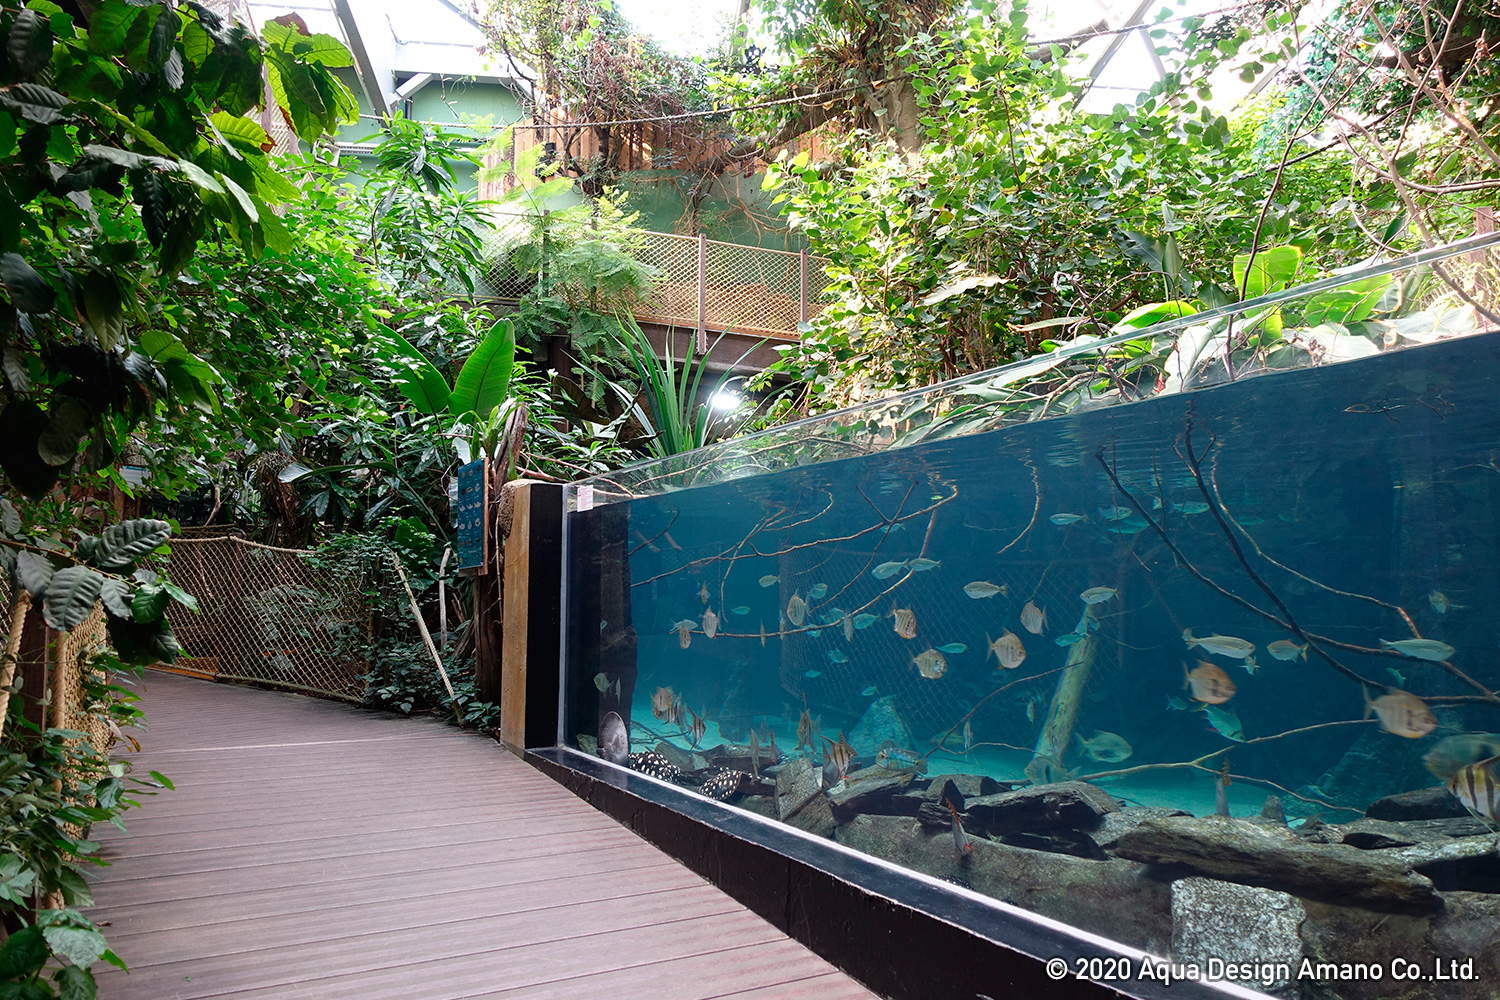 WORLD REPORT – Aquatis, the largest freshwater aquarium in Europe –